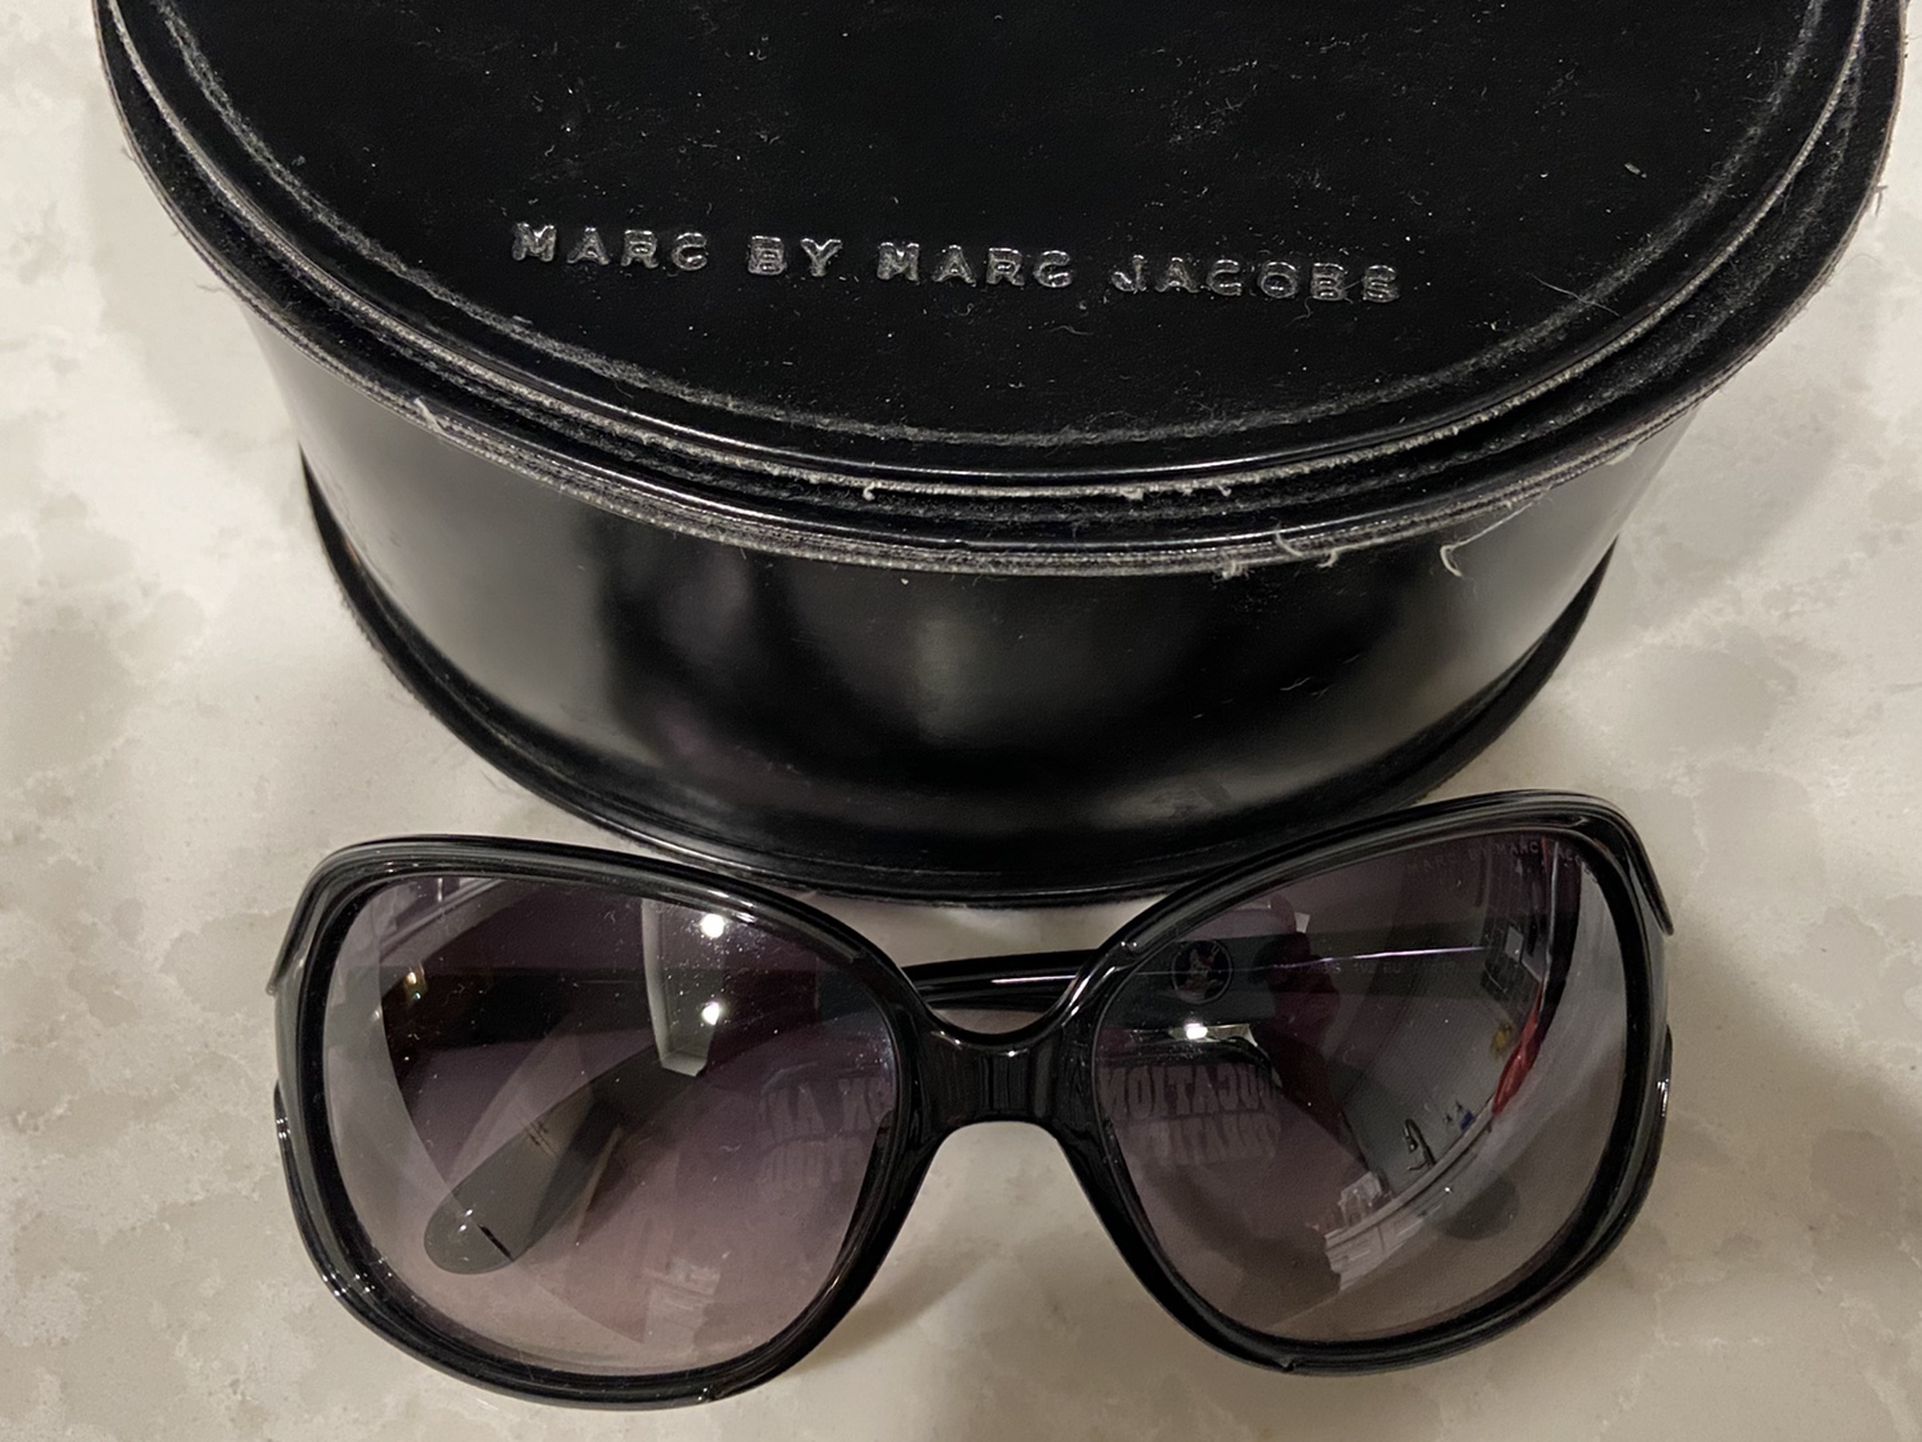 Marc Jacobs Women’s Sunglasses - Black